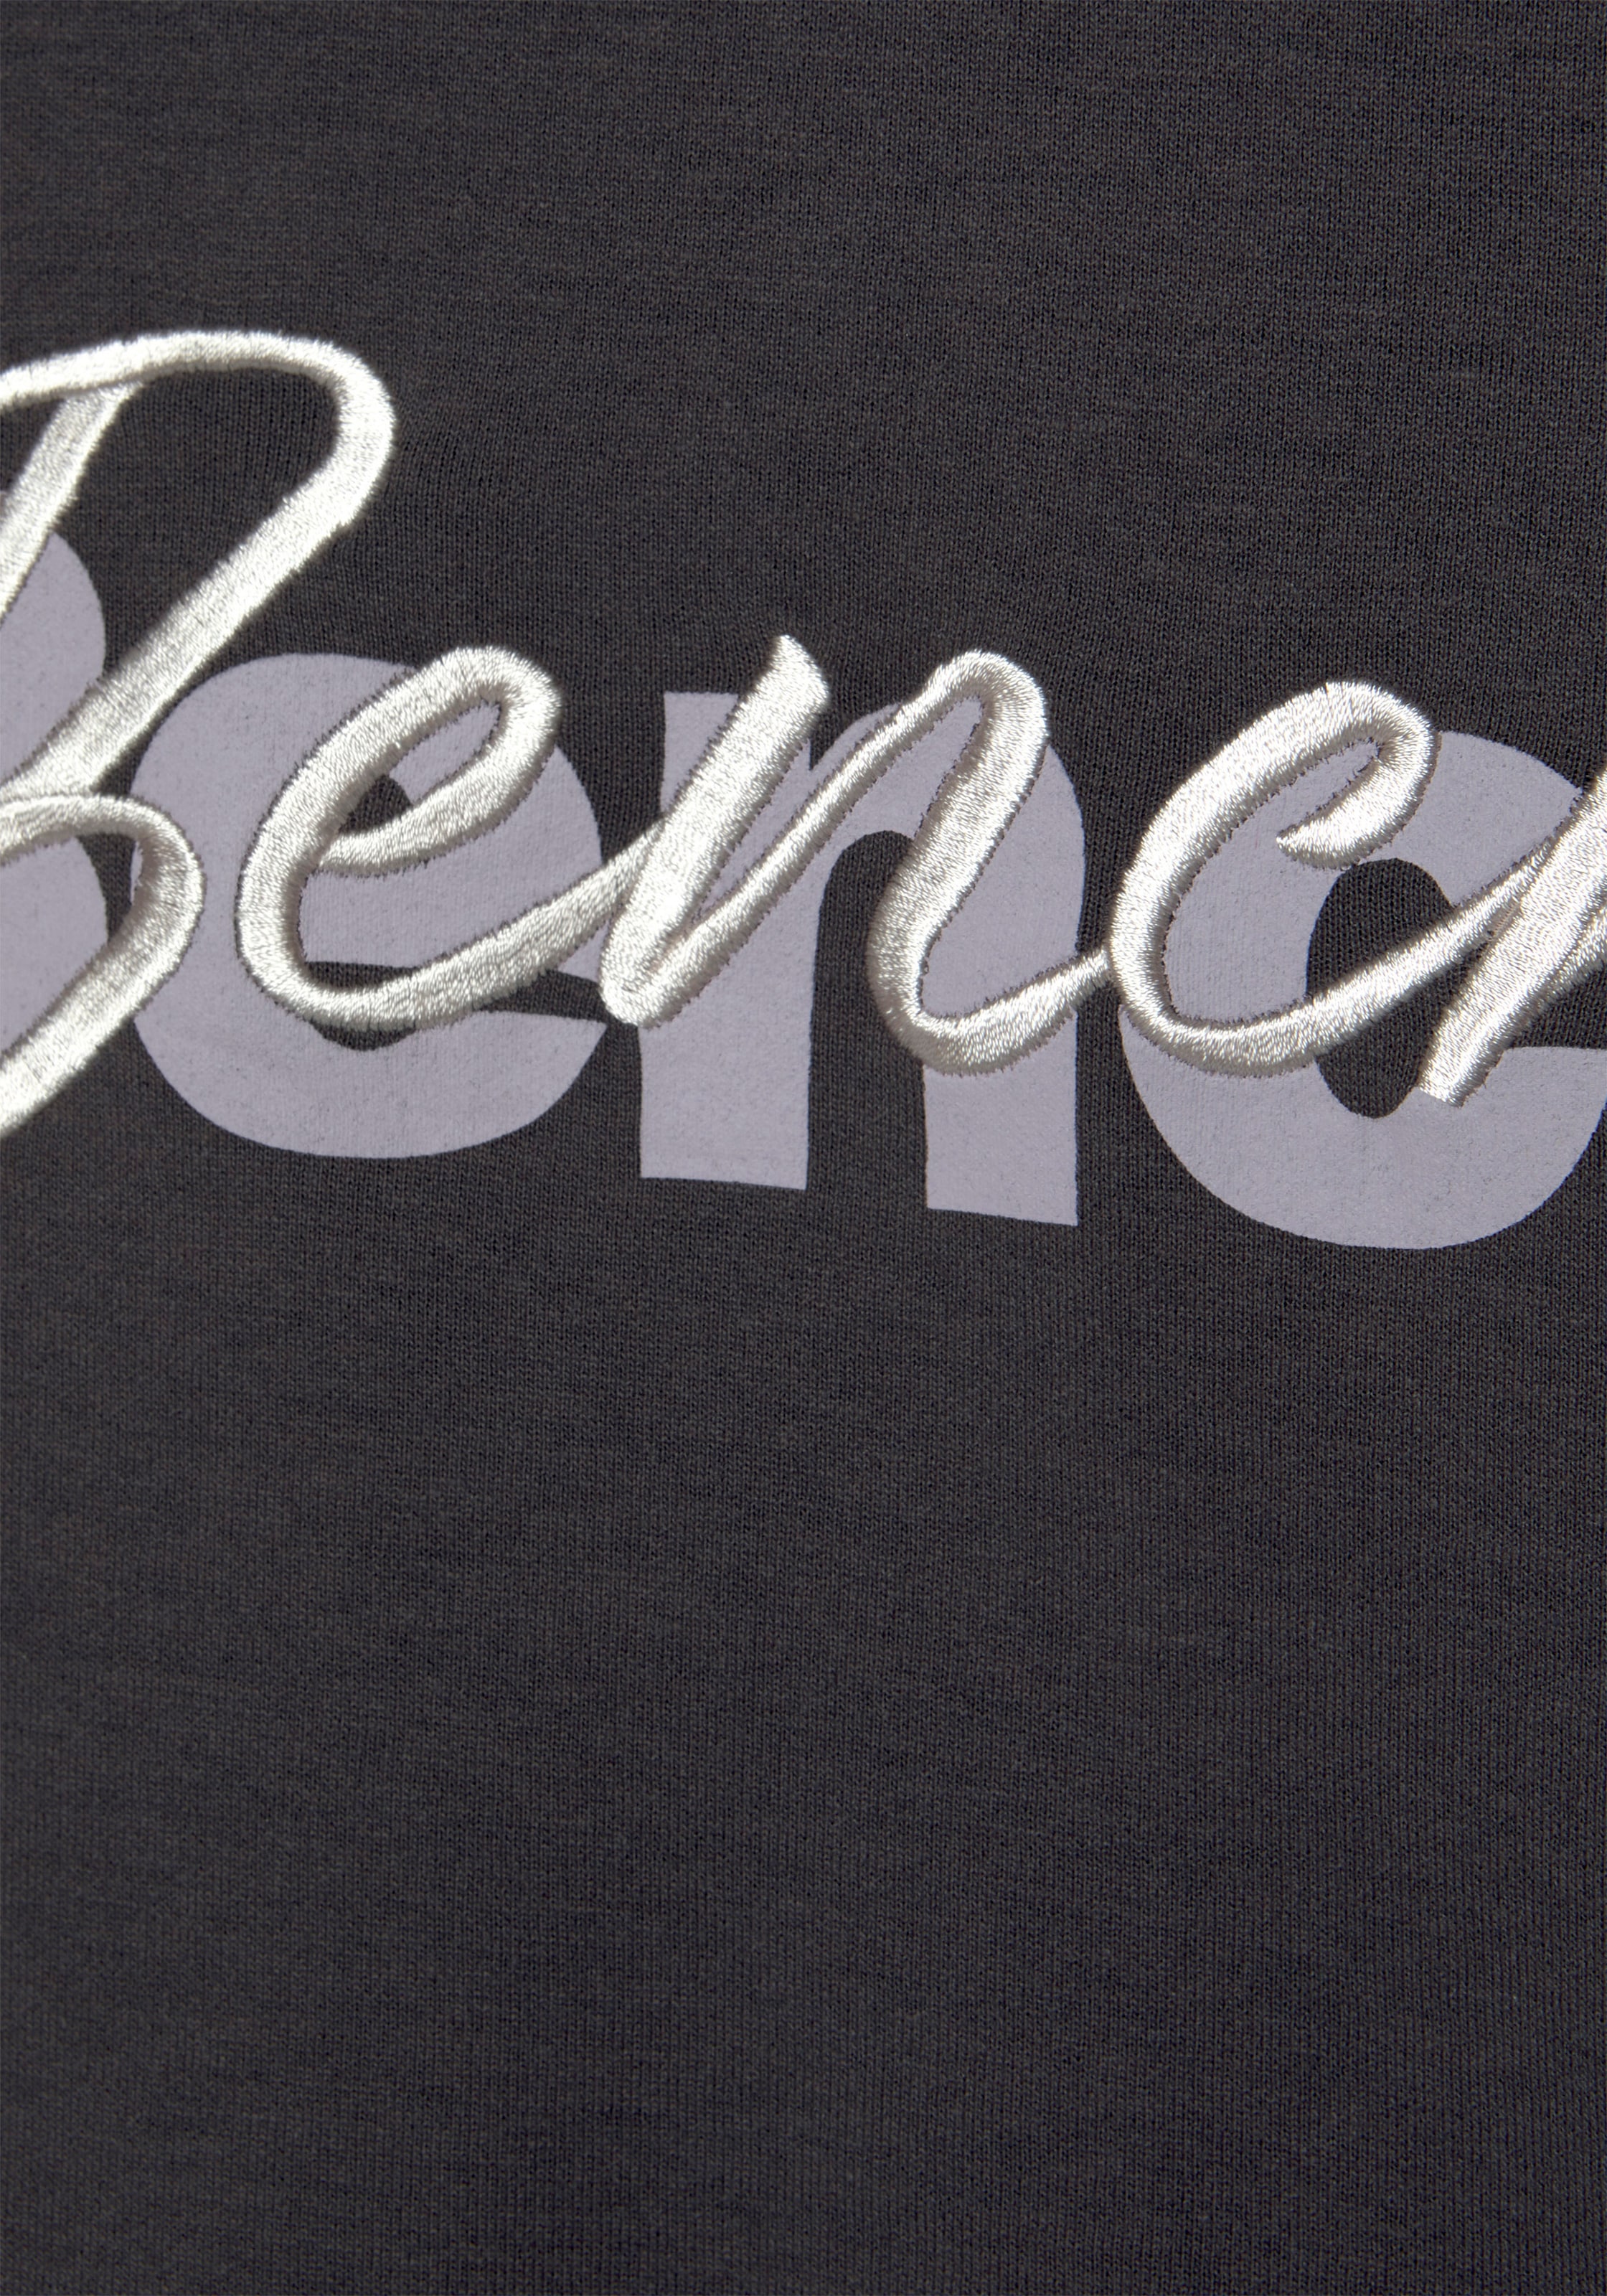 Bench. Loungewear Sweatshirt, mit Logodruck und Stickerei, Loungeanzug  online bei OTTO